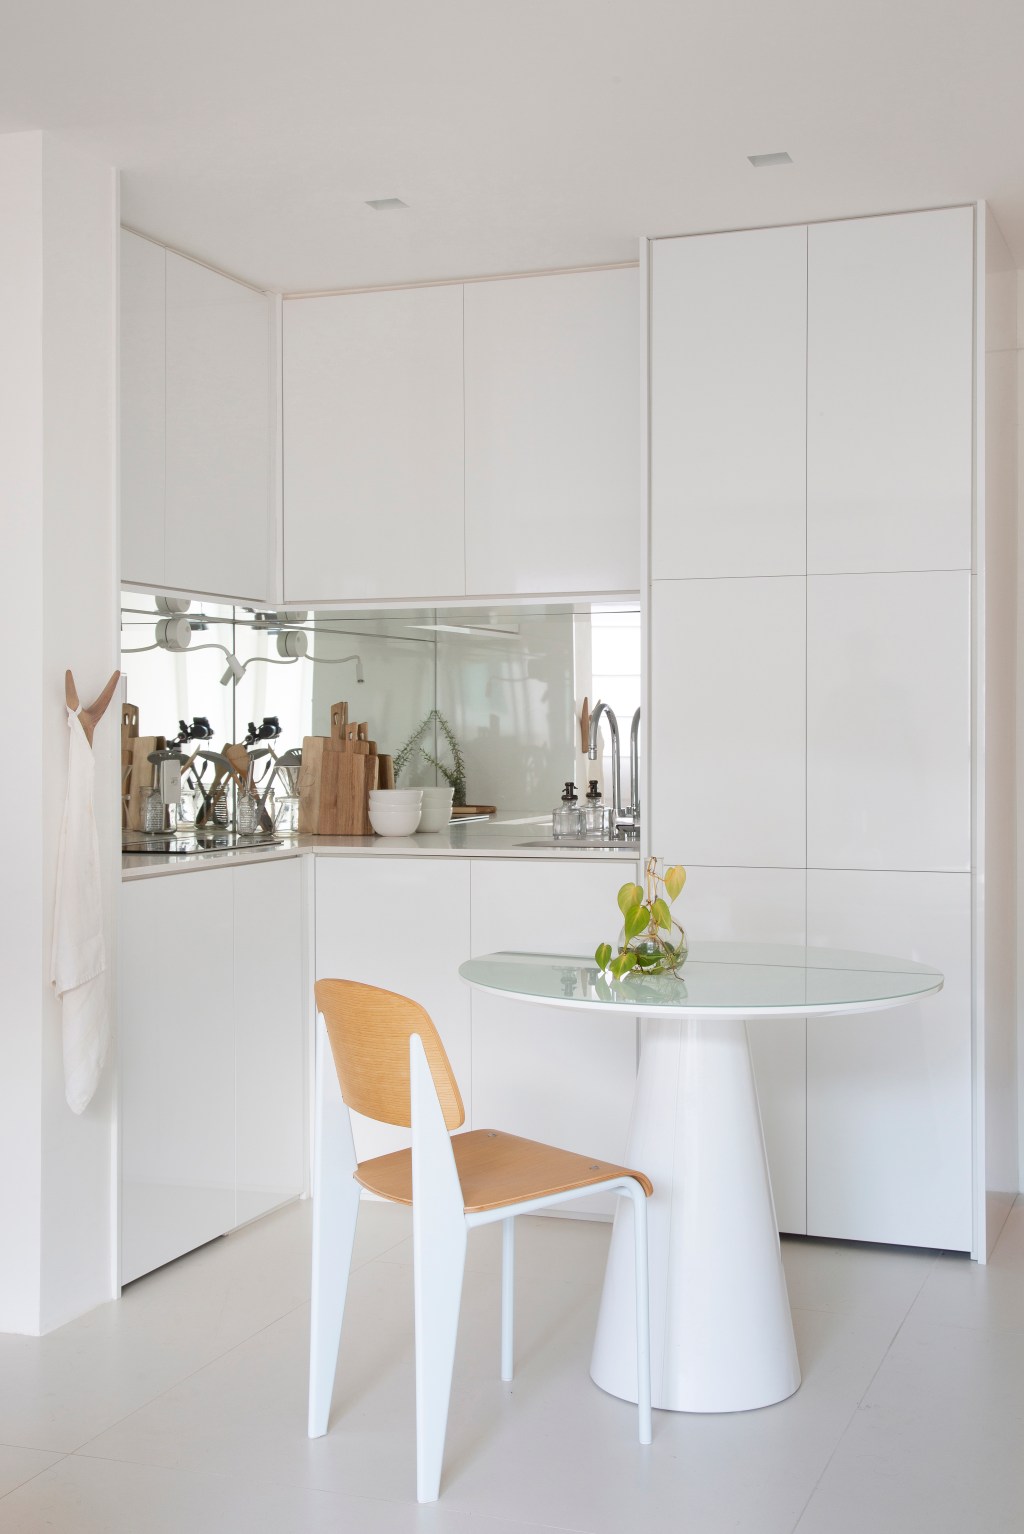 Loft de 40 m² ganha projeto minimalista que une branco e madeira. Projeto de Diego Raposo e Manuela Simas. Na foto, sala de jantar e cozinha com espelho.